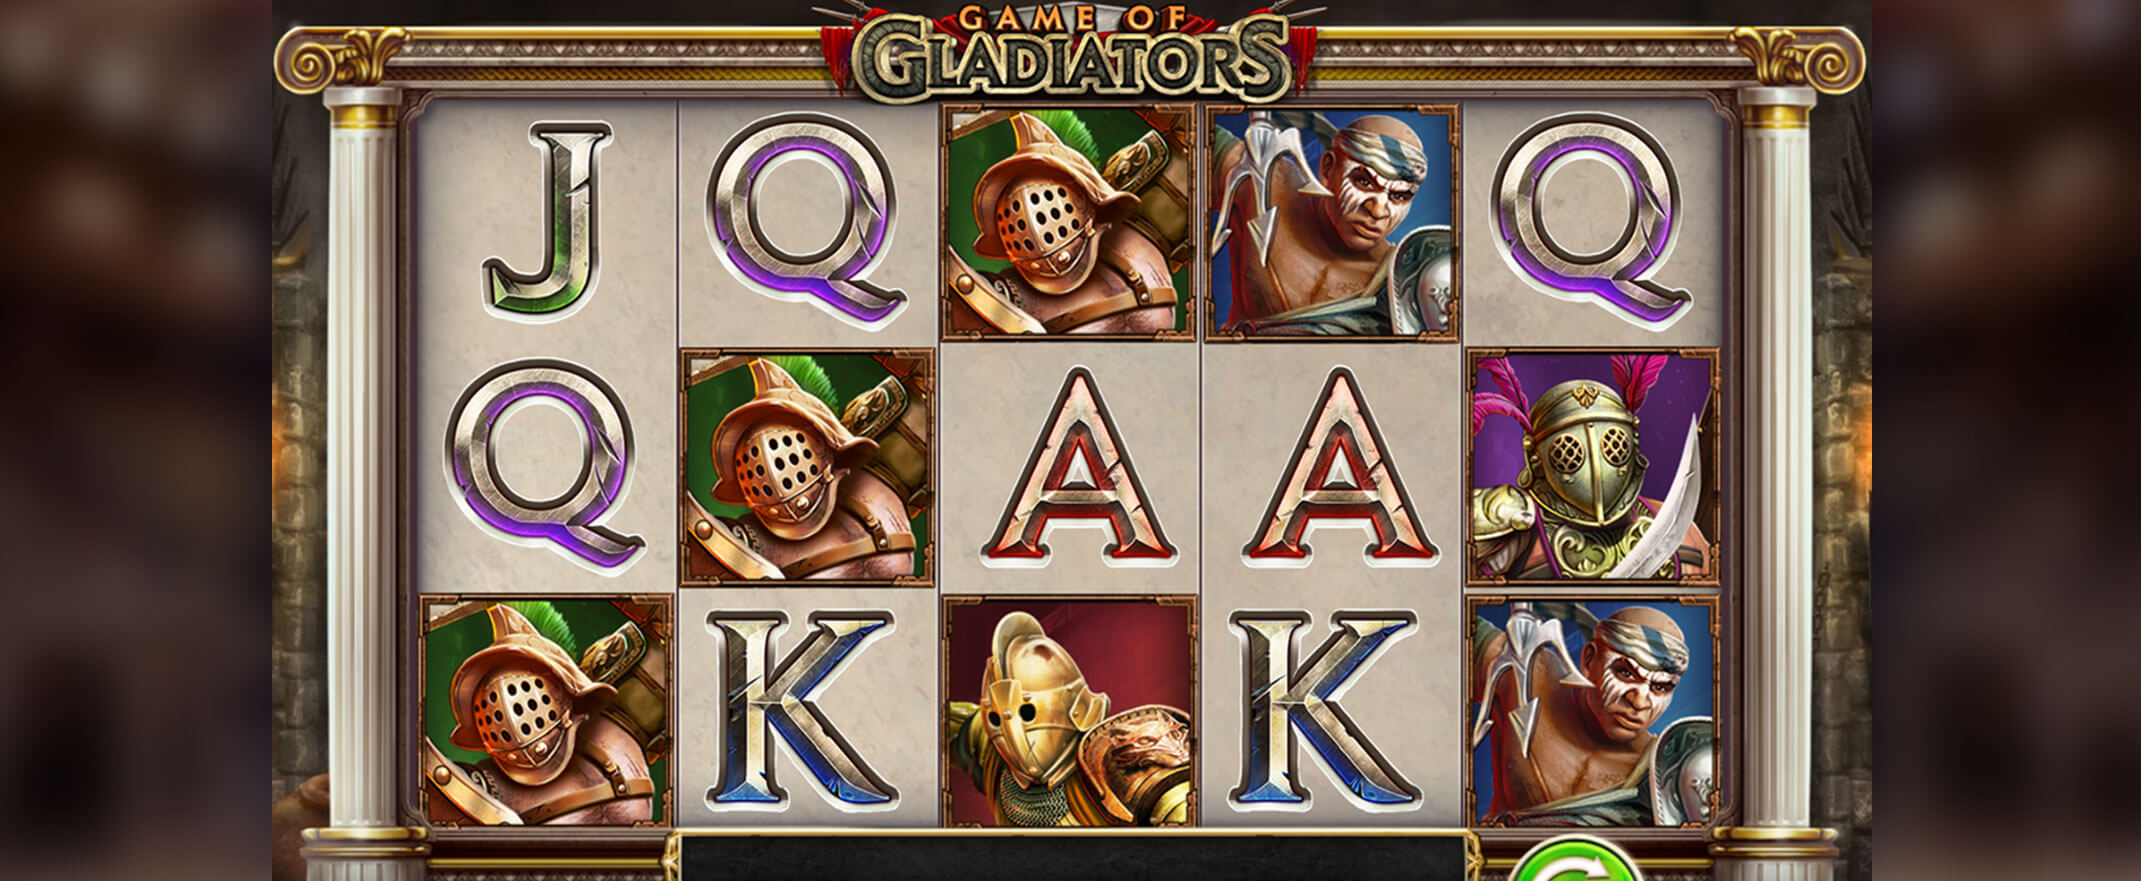 Game of Gladiators Spiel von Play'n Go